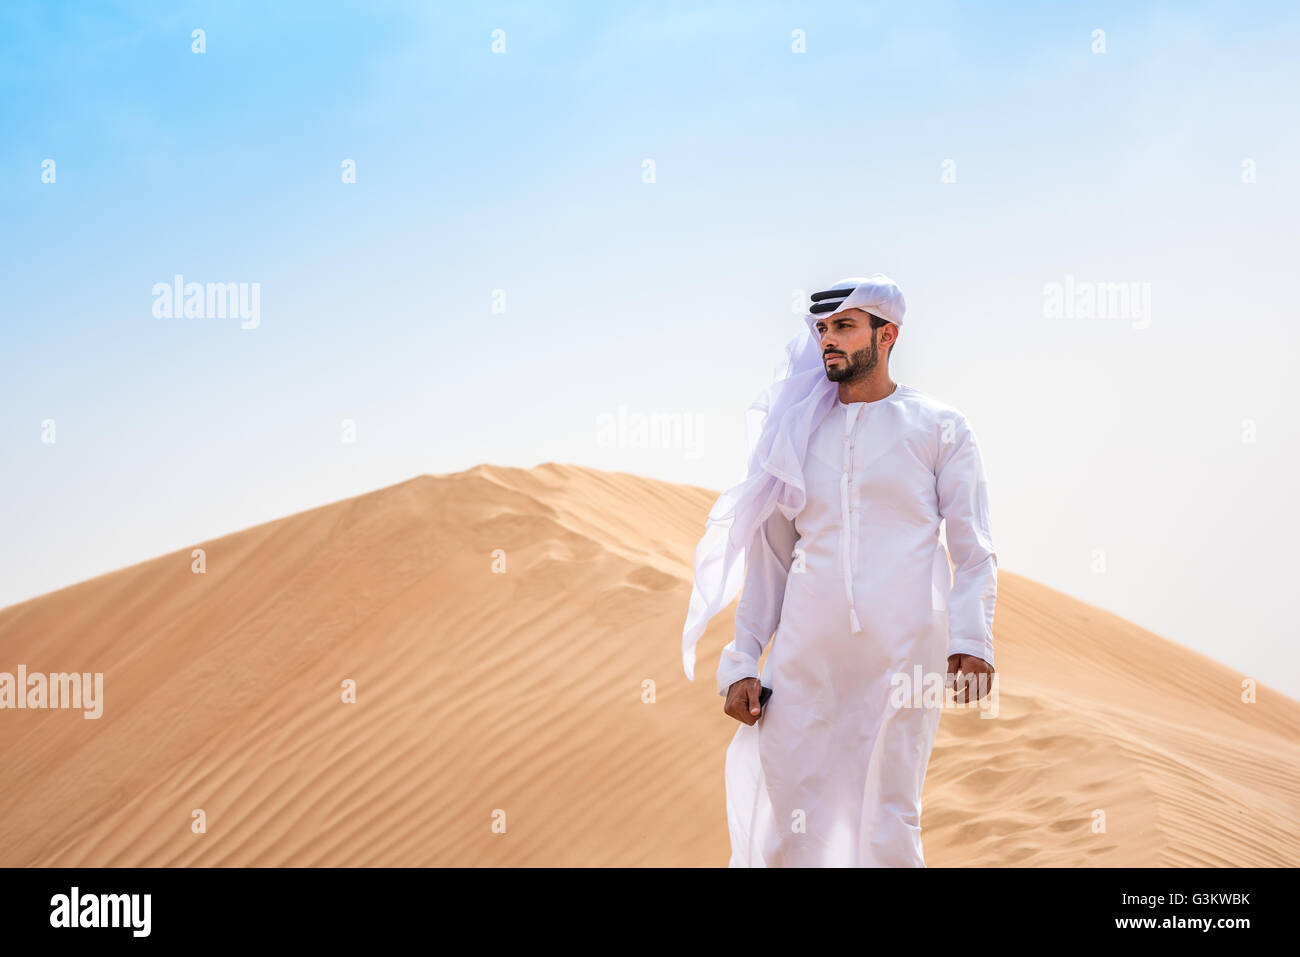 https://c8.alamy.com/comp/G3KWBK/middle-eastern-man-wearing-traditional-clothes-on-desert-dune-dubai-G3KWBK.jpg